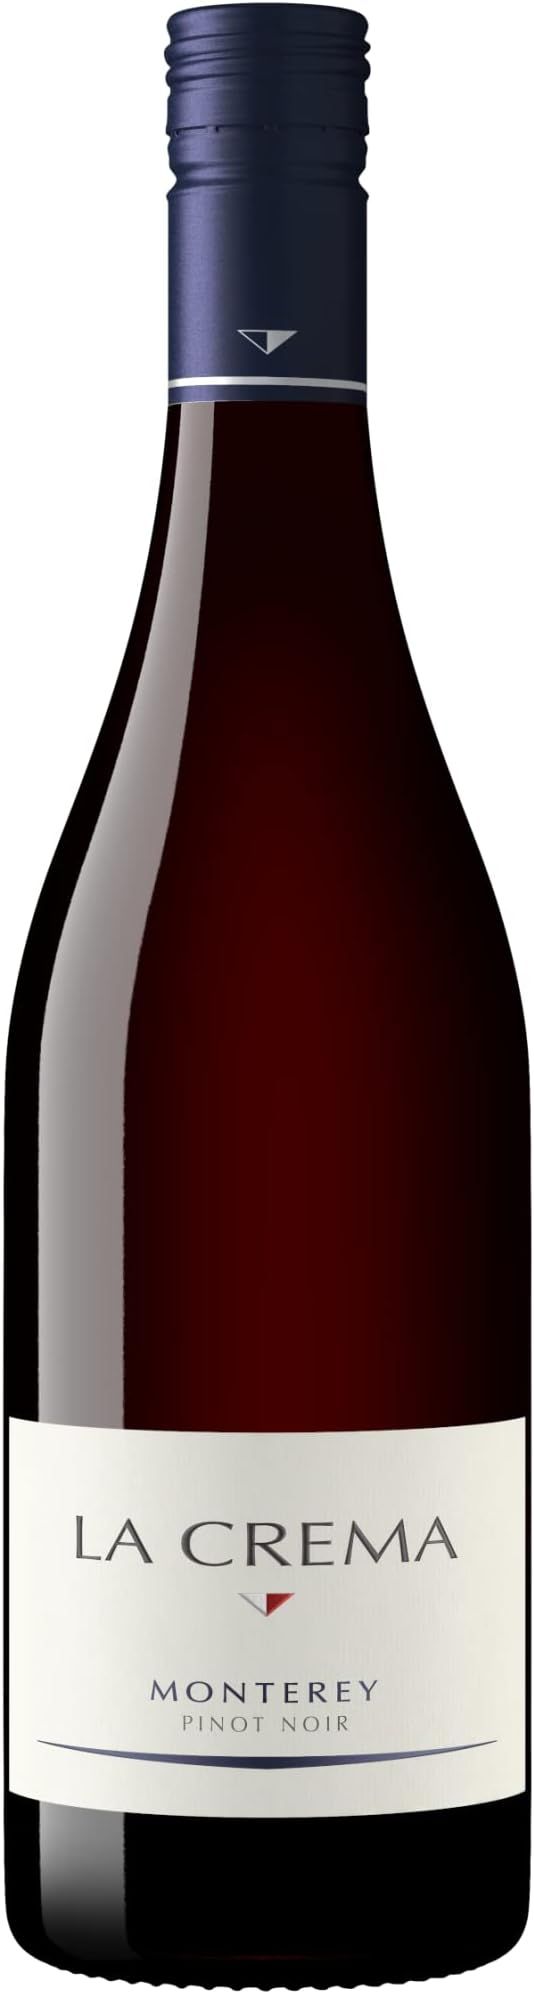 La Crema Monterey Pinot Noir Red Wine, 750ml | Amazon (US)